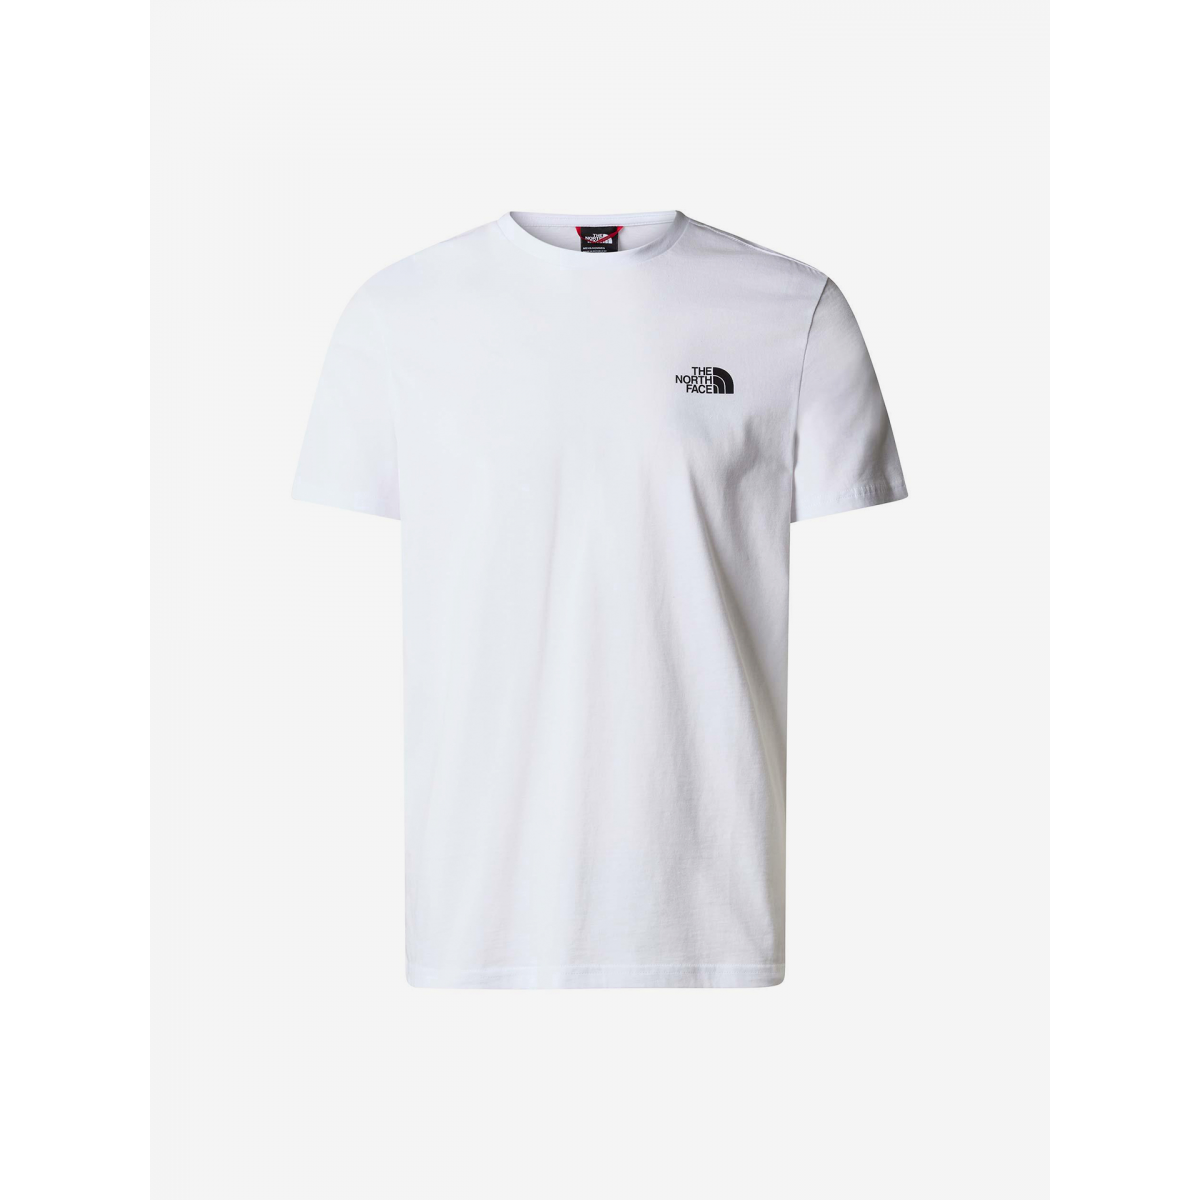 Camiseta The North Face Graphic TNF Blanco – La La Land Store